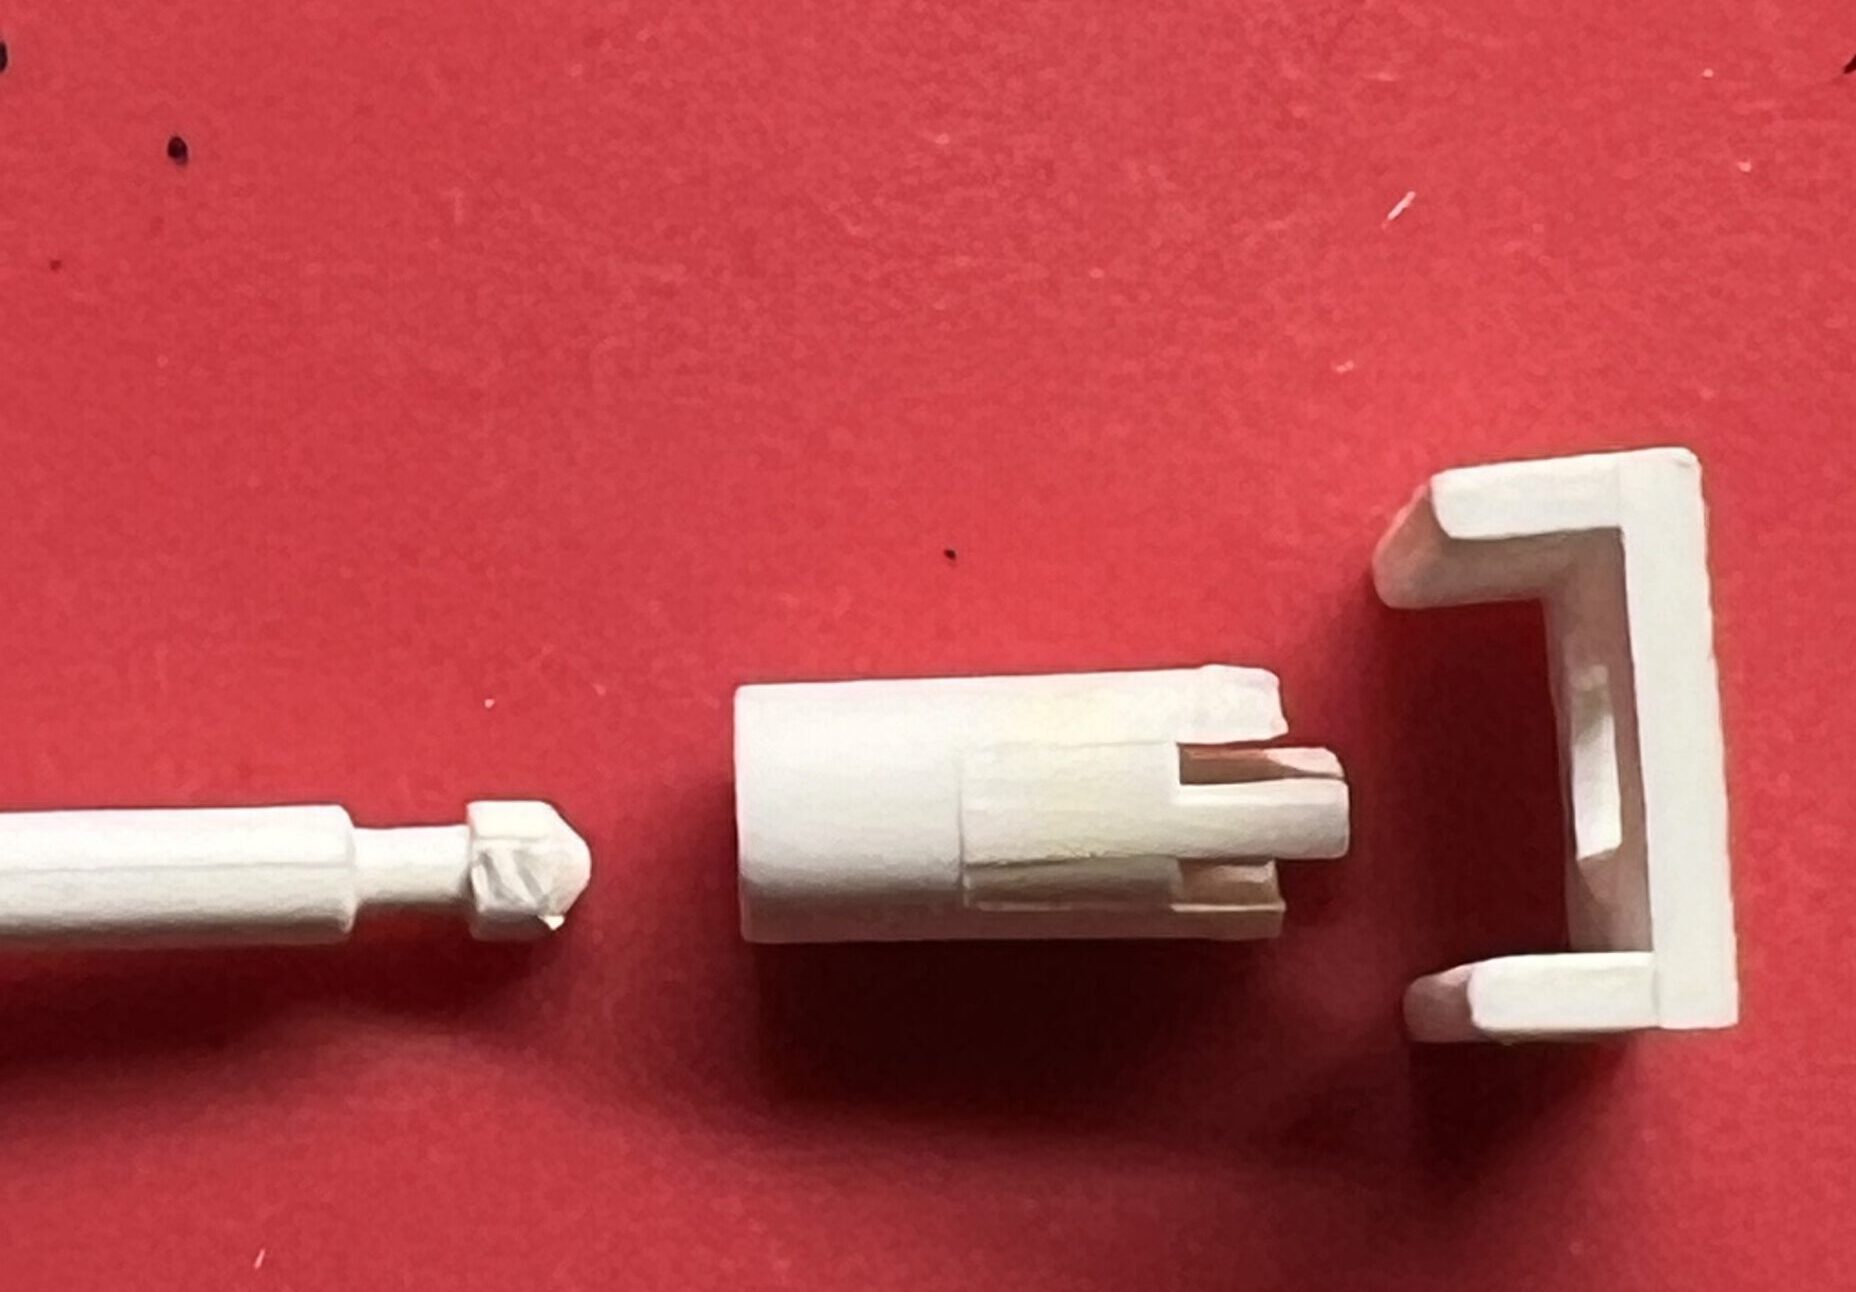 Drei Teile - der Knopf mit dem Stift links, das abgebrochene Fassungs-Teil in der Mitte, und die Oberplatte rechts